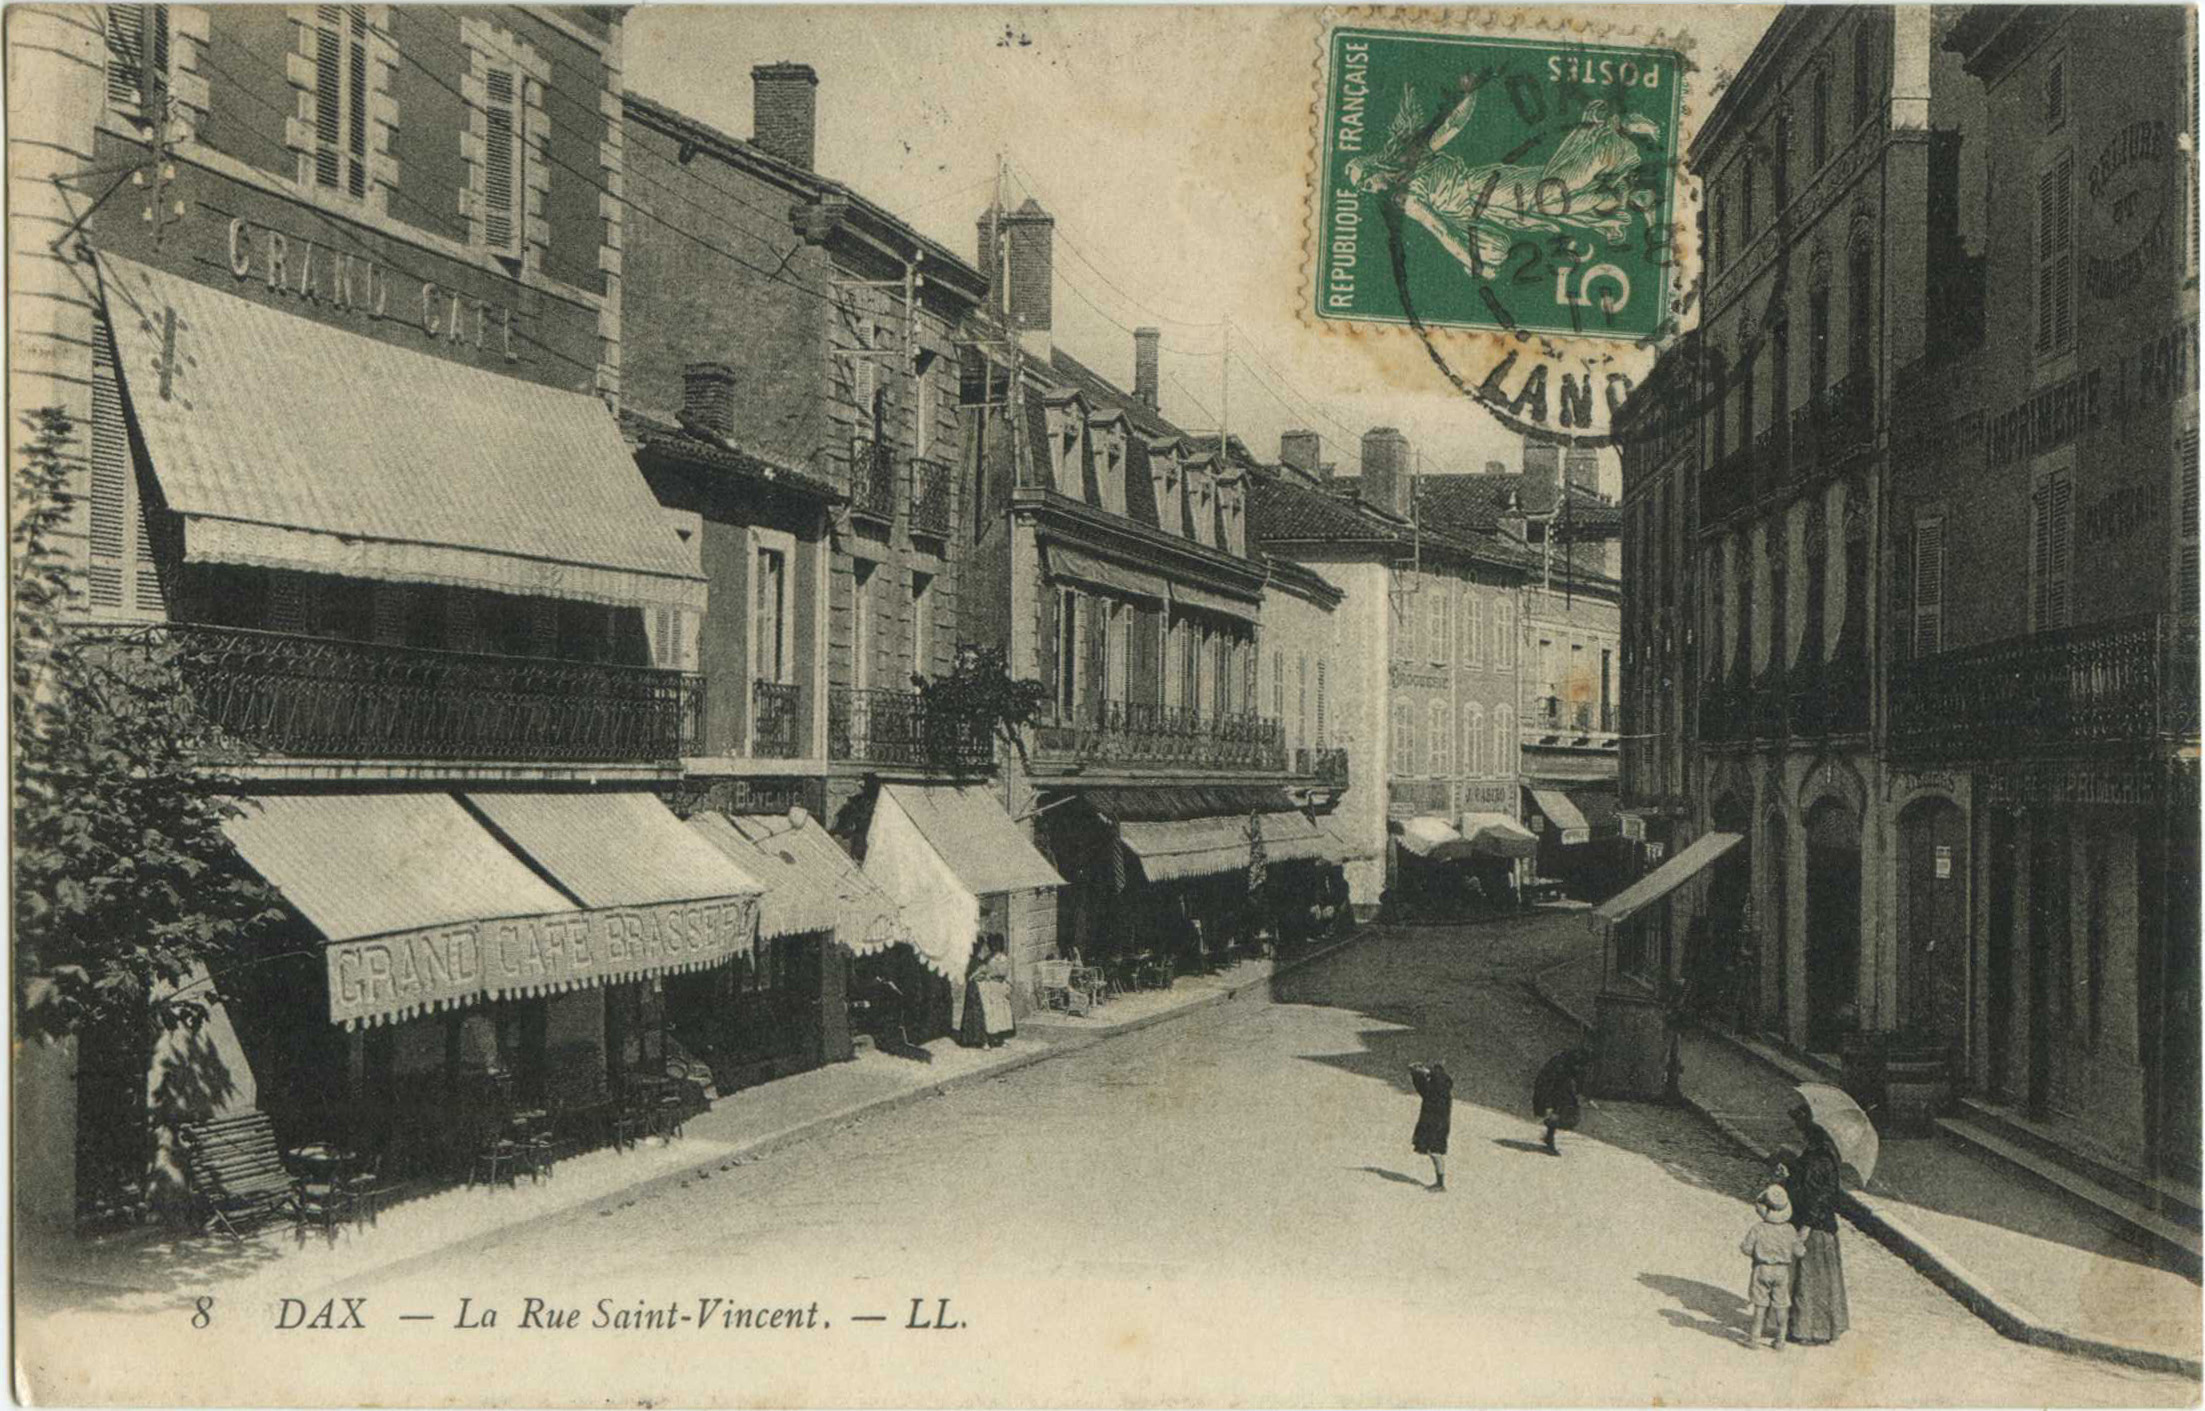 Dax - La Rue Saint-Vincent.